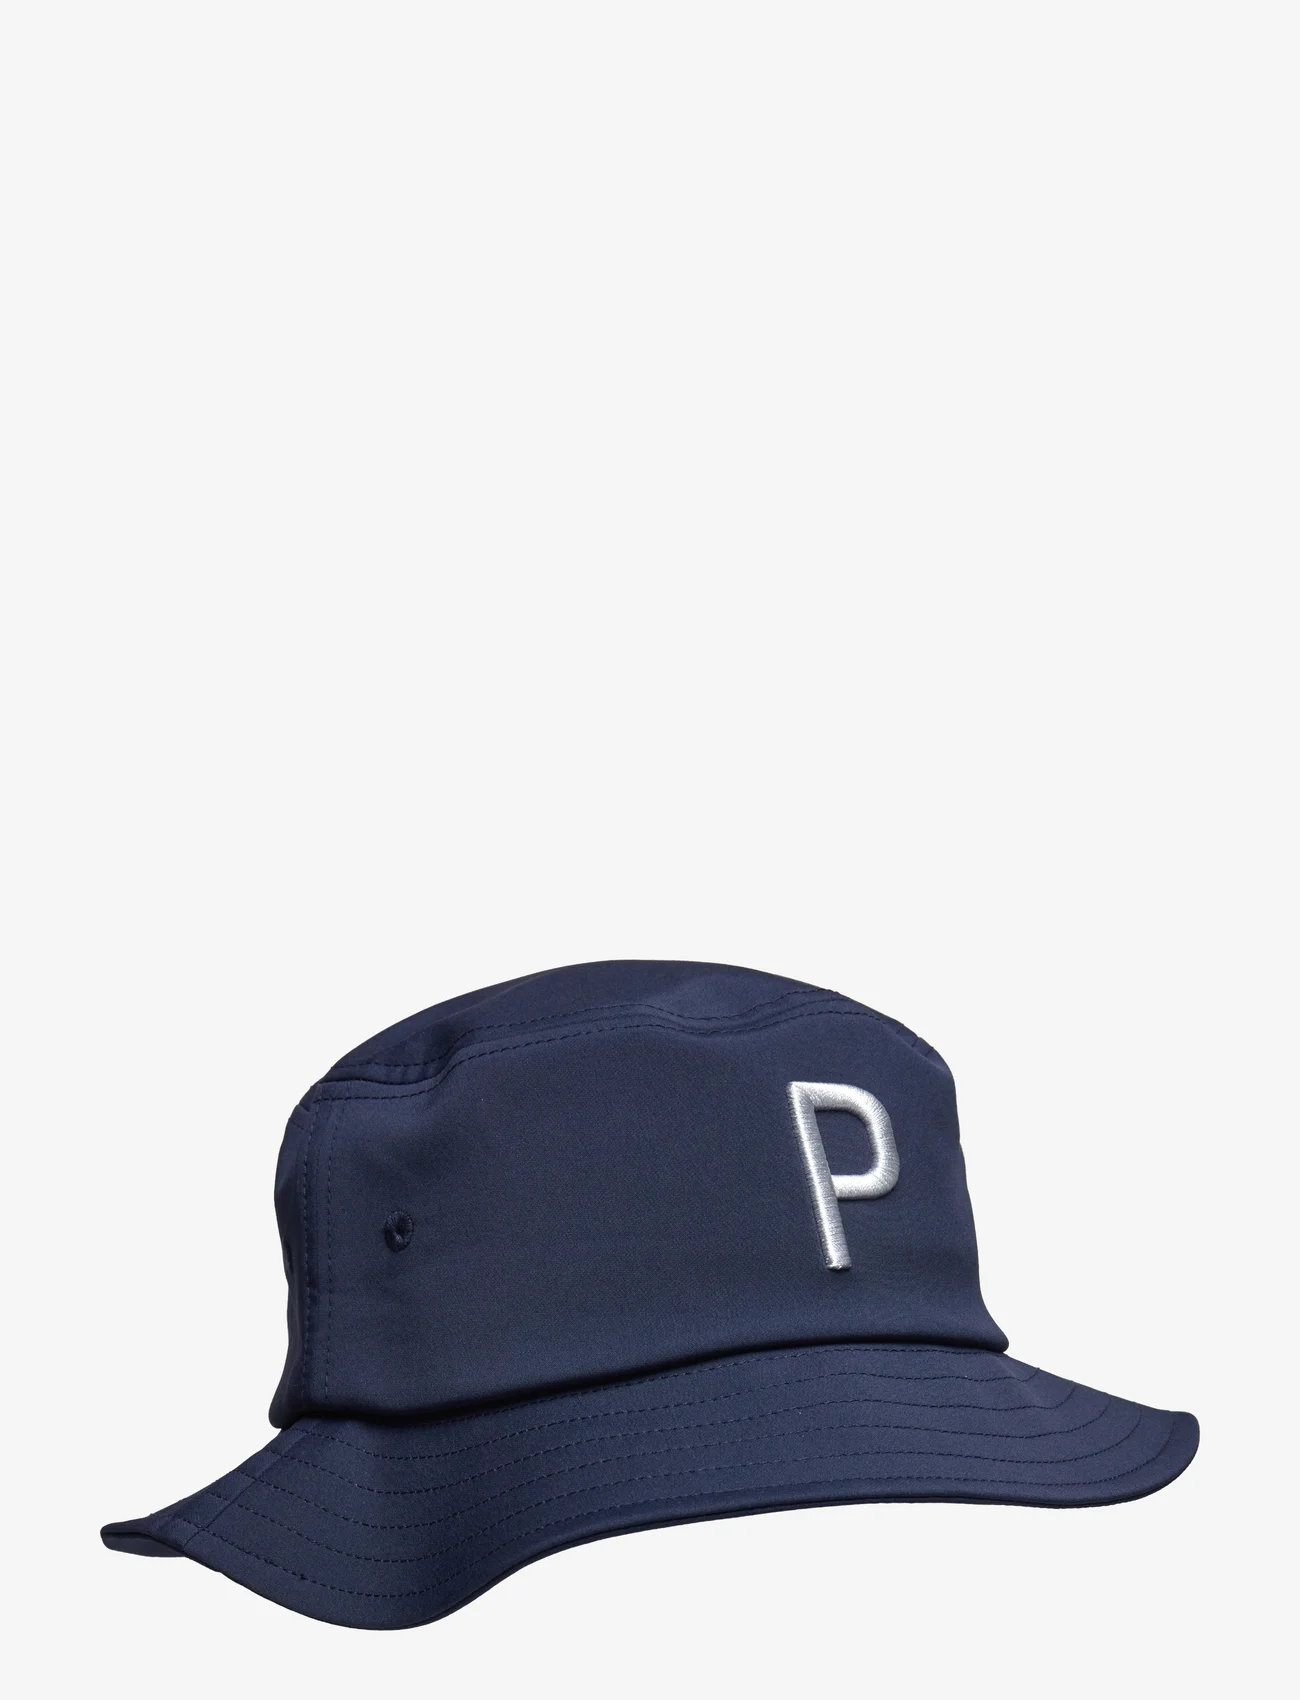 PUMA Golf - Bucket P Hat - laagste prijzen - navy blazer - 0